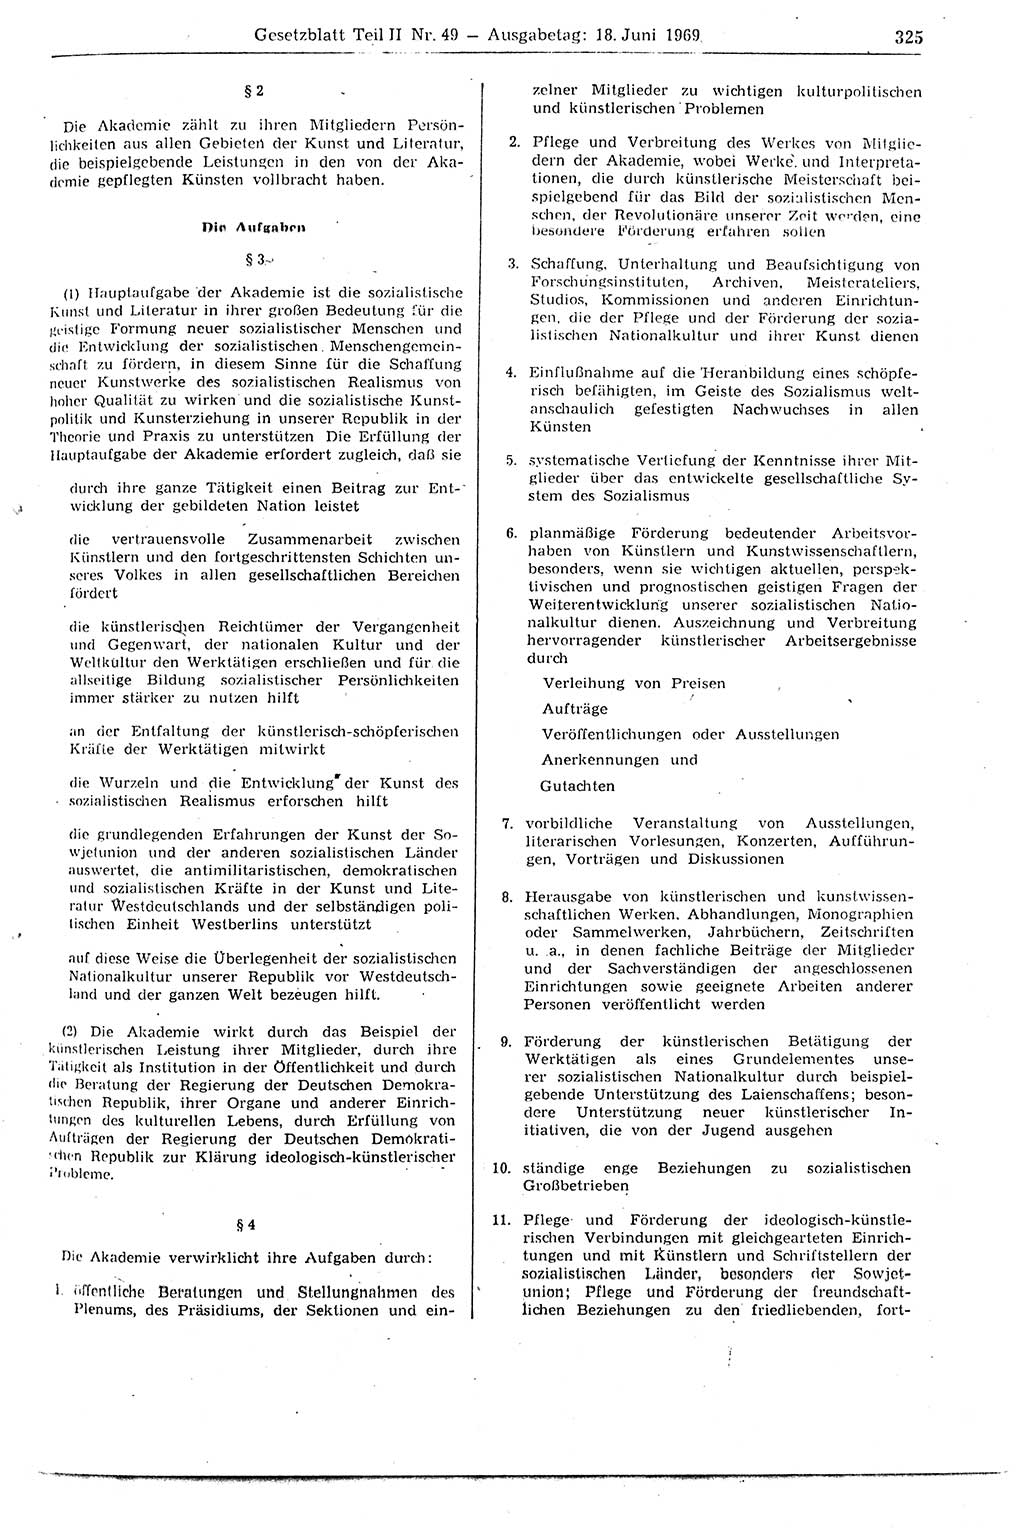 Gesetzblatt (GBl.) der Deutschen Demokratischen Republik (DDR) Teil ⅠⅠ 1969, Seite 325 (GBl. DDR ⅠⅠ 1969, S. 325)